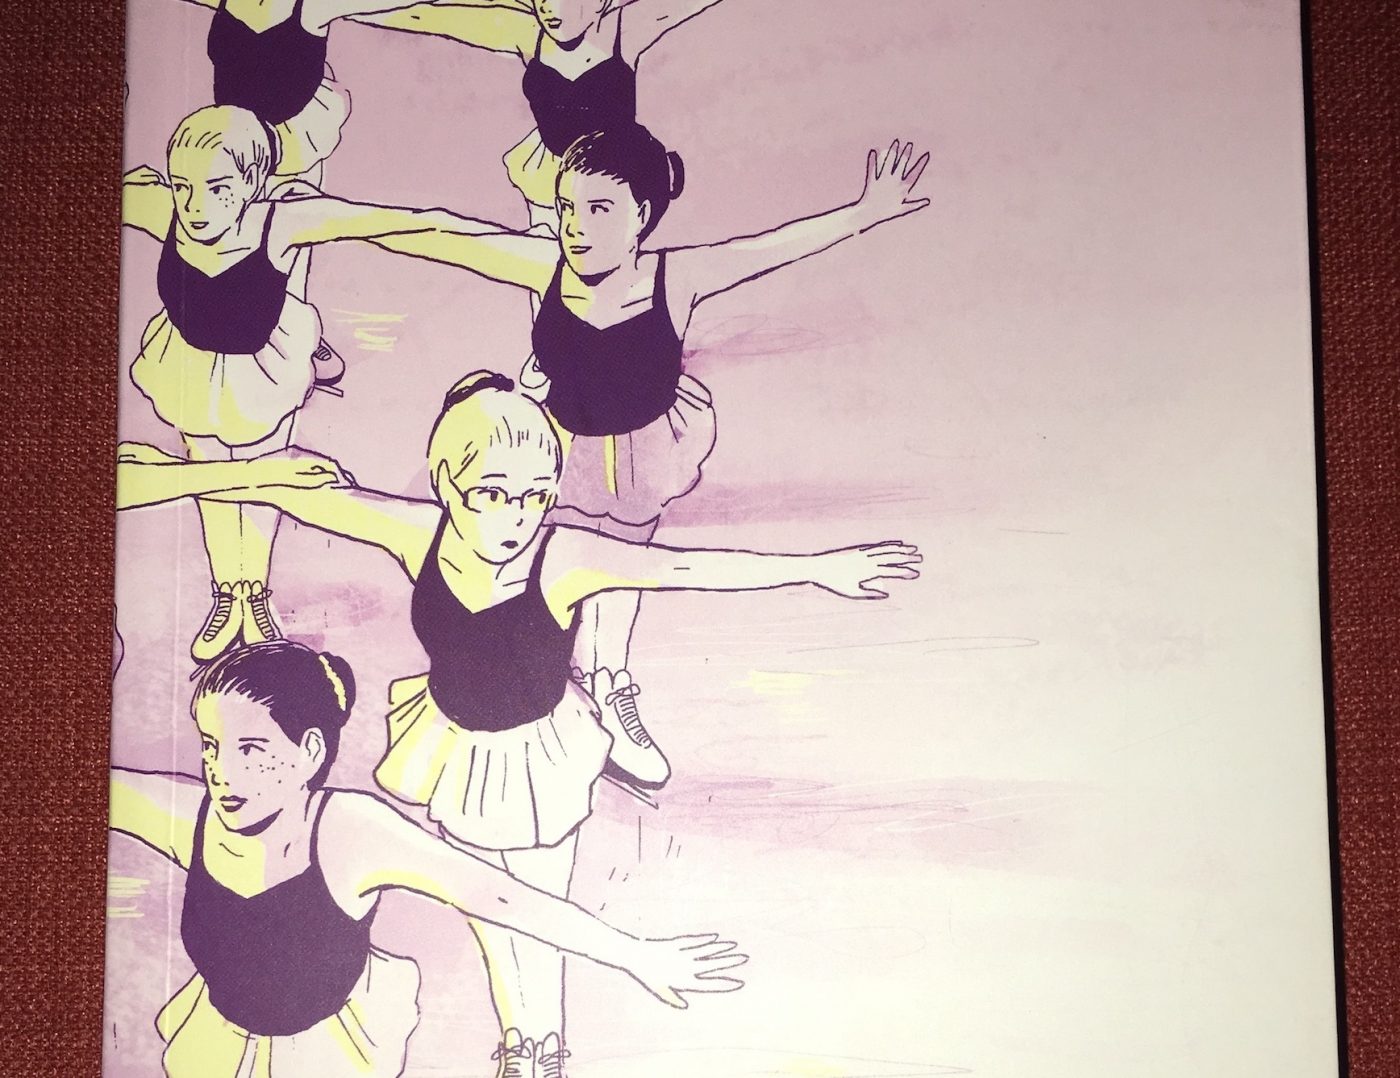 Tillie Walden's 'Spinning' elegantly captures the nuances of awkward moments